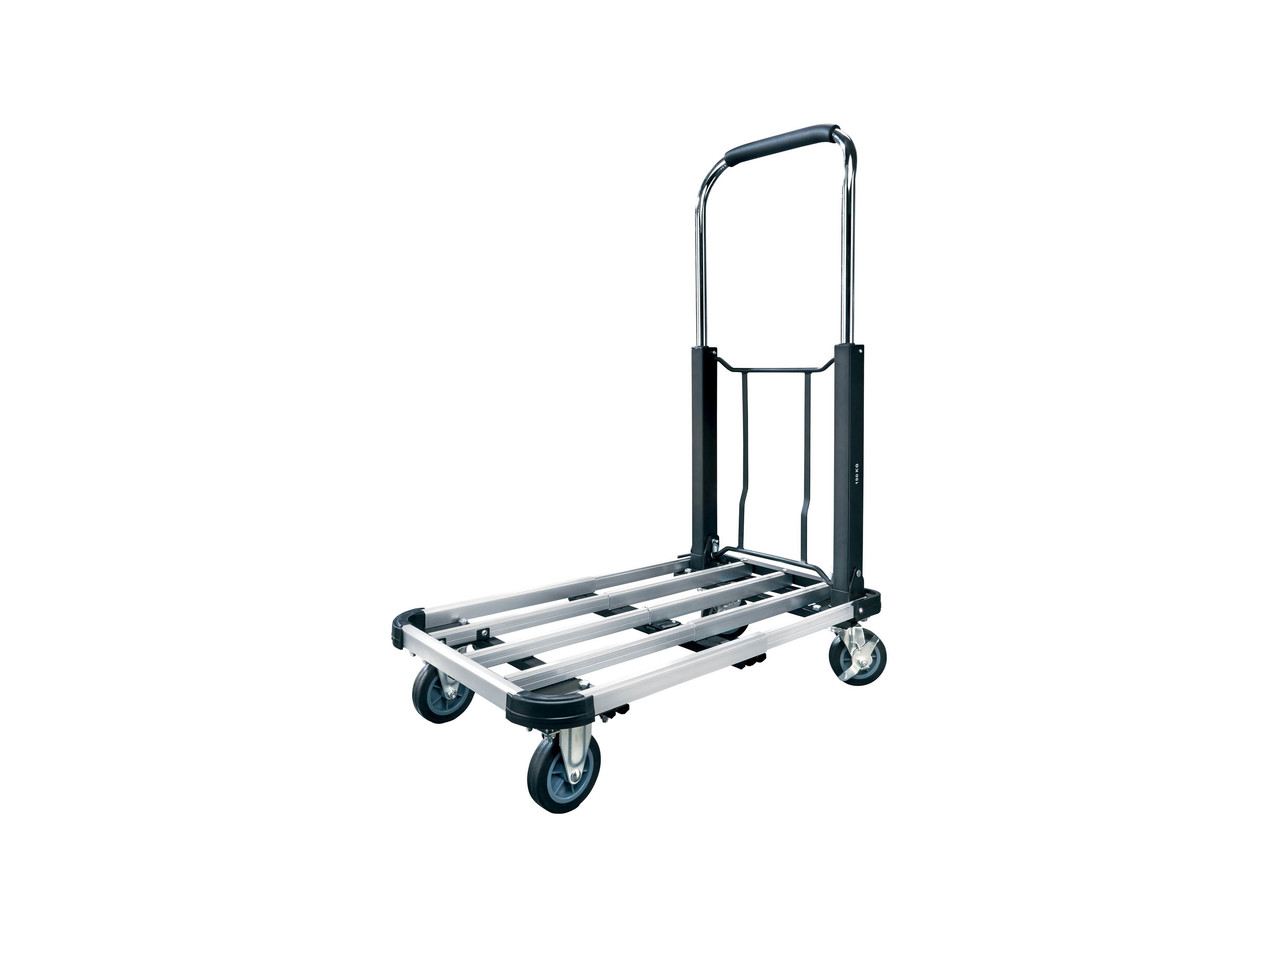 POWERFIX Aluminium Flat Bed Trolley